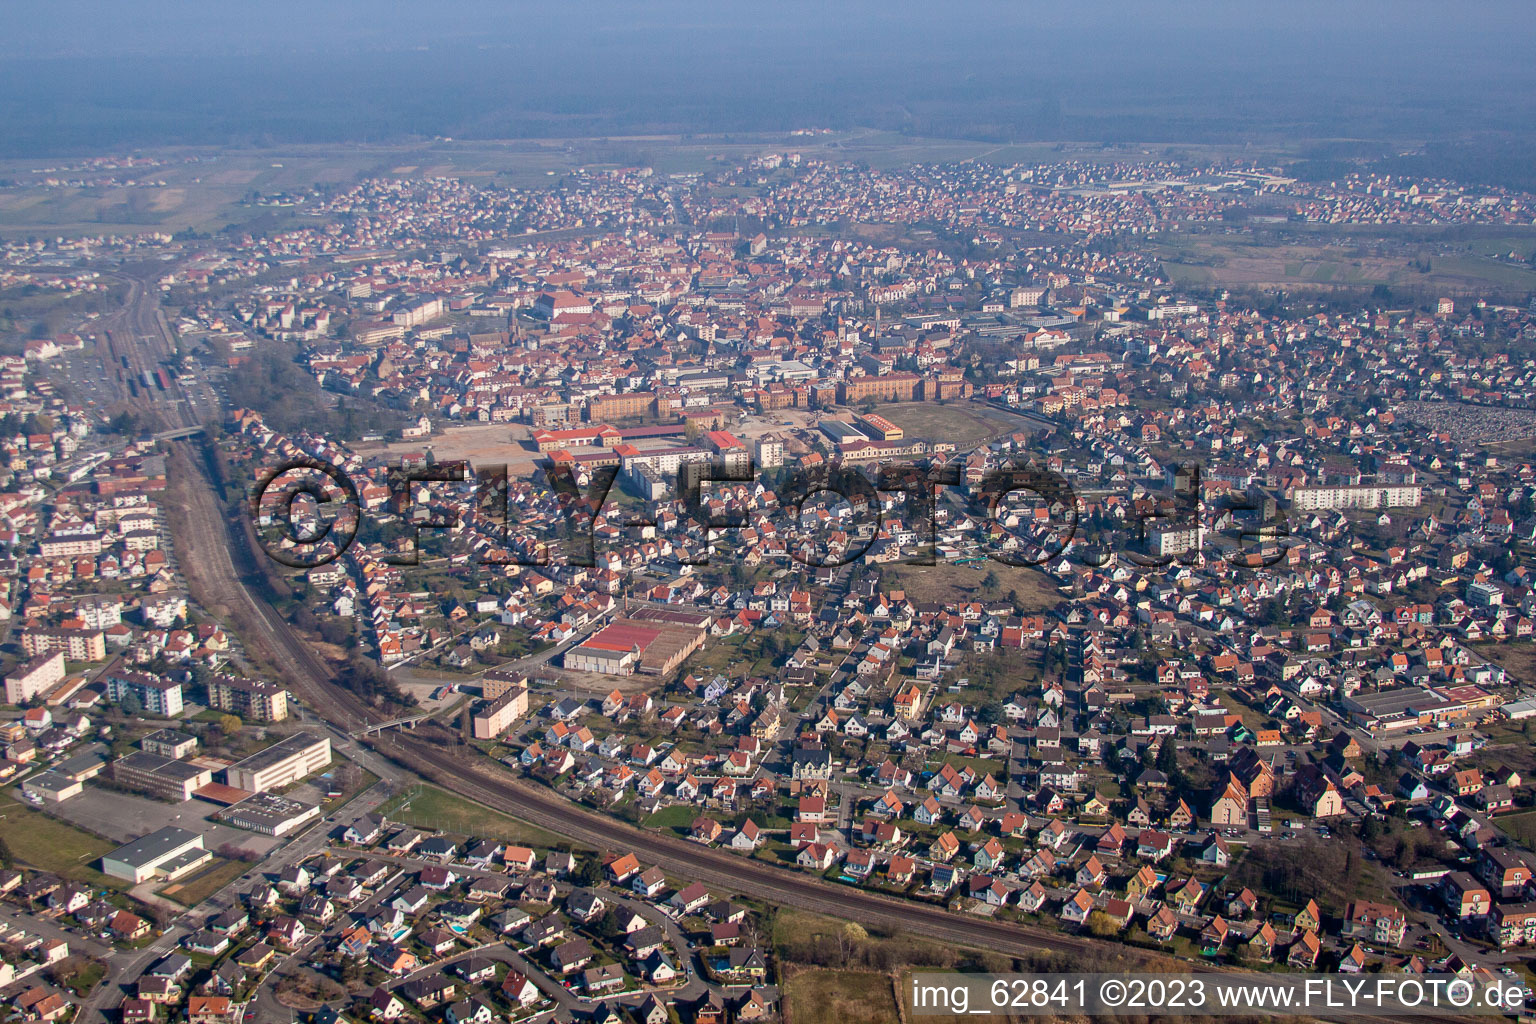 Haguenau im Bundesland Bas-Rhin, Frankreich von einer Drohne aus